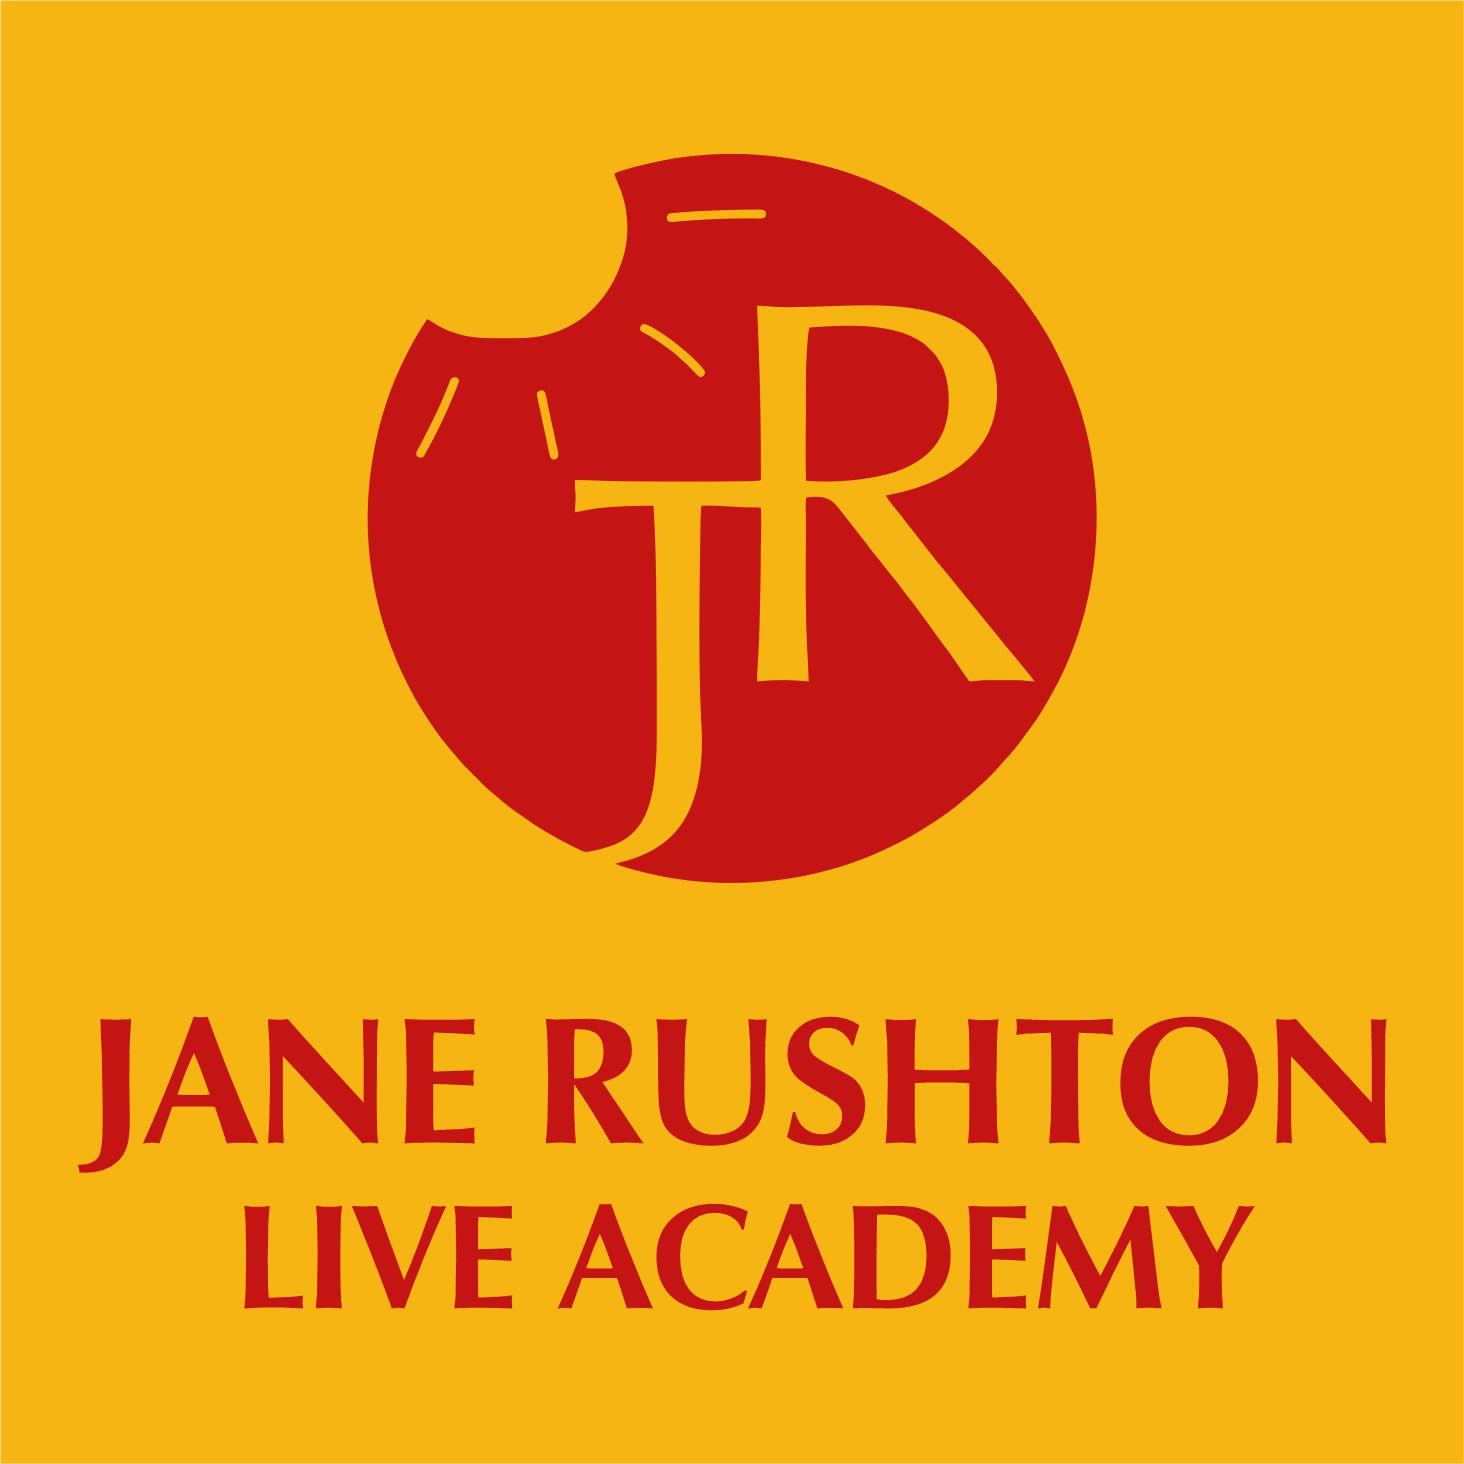 Jane Rushton Live